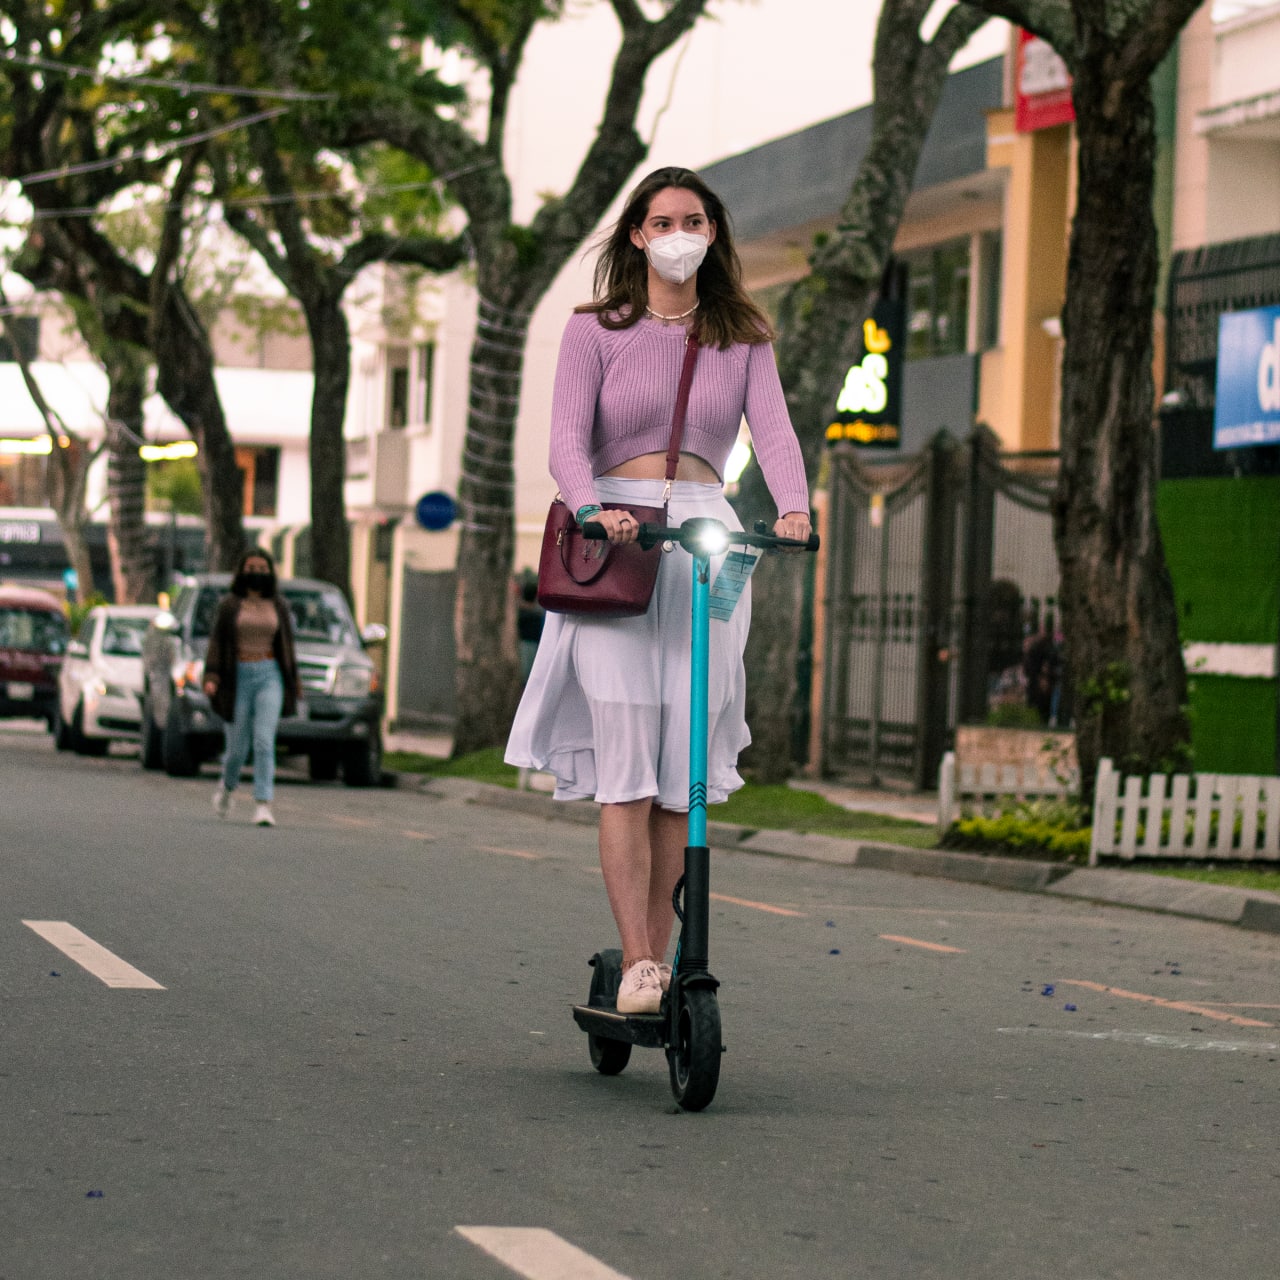 ‘HOP Scooter’ se contempla como alternativa de movilidad sostenible en Loja